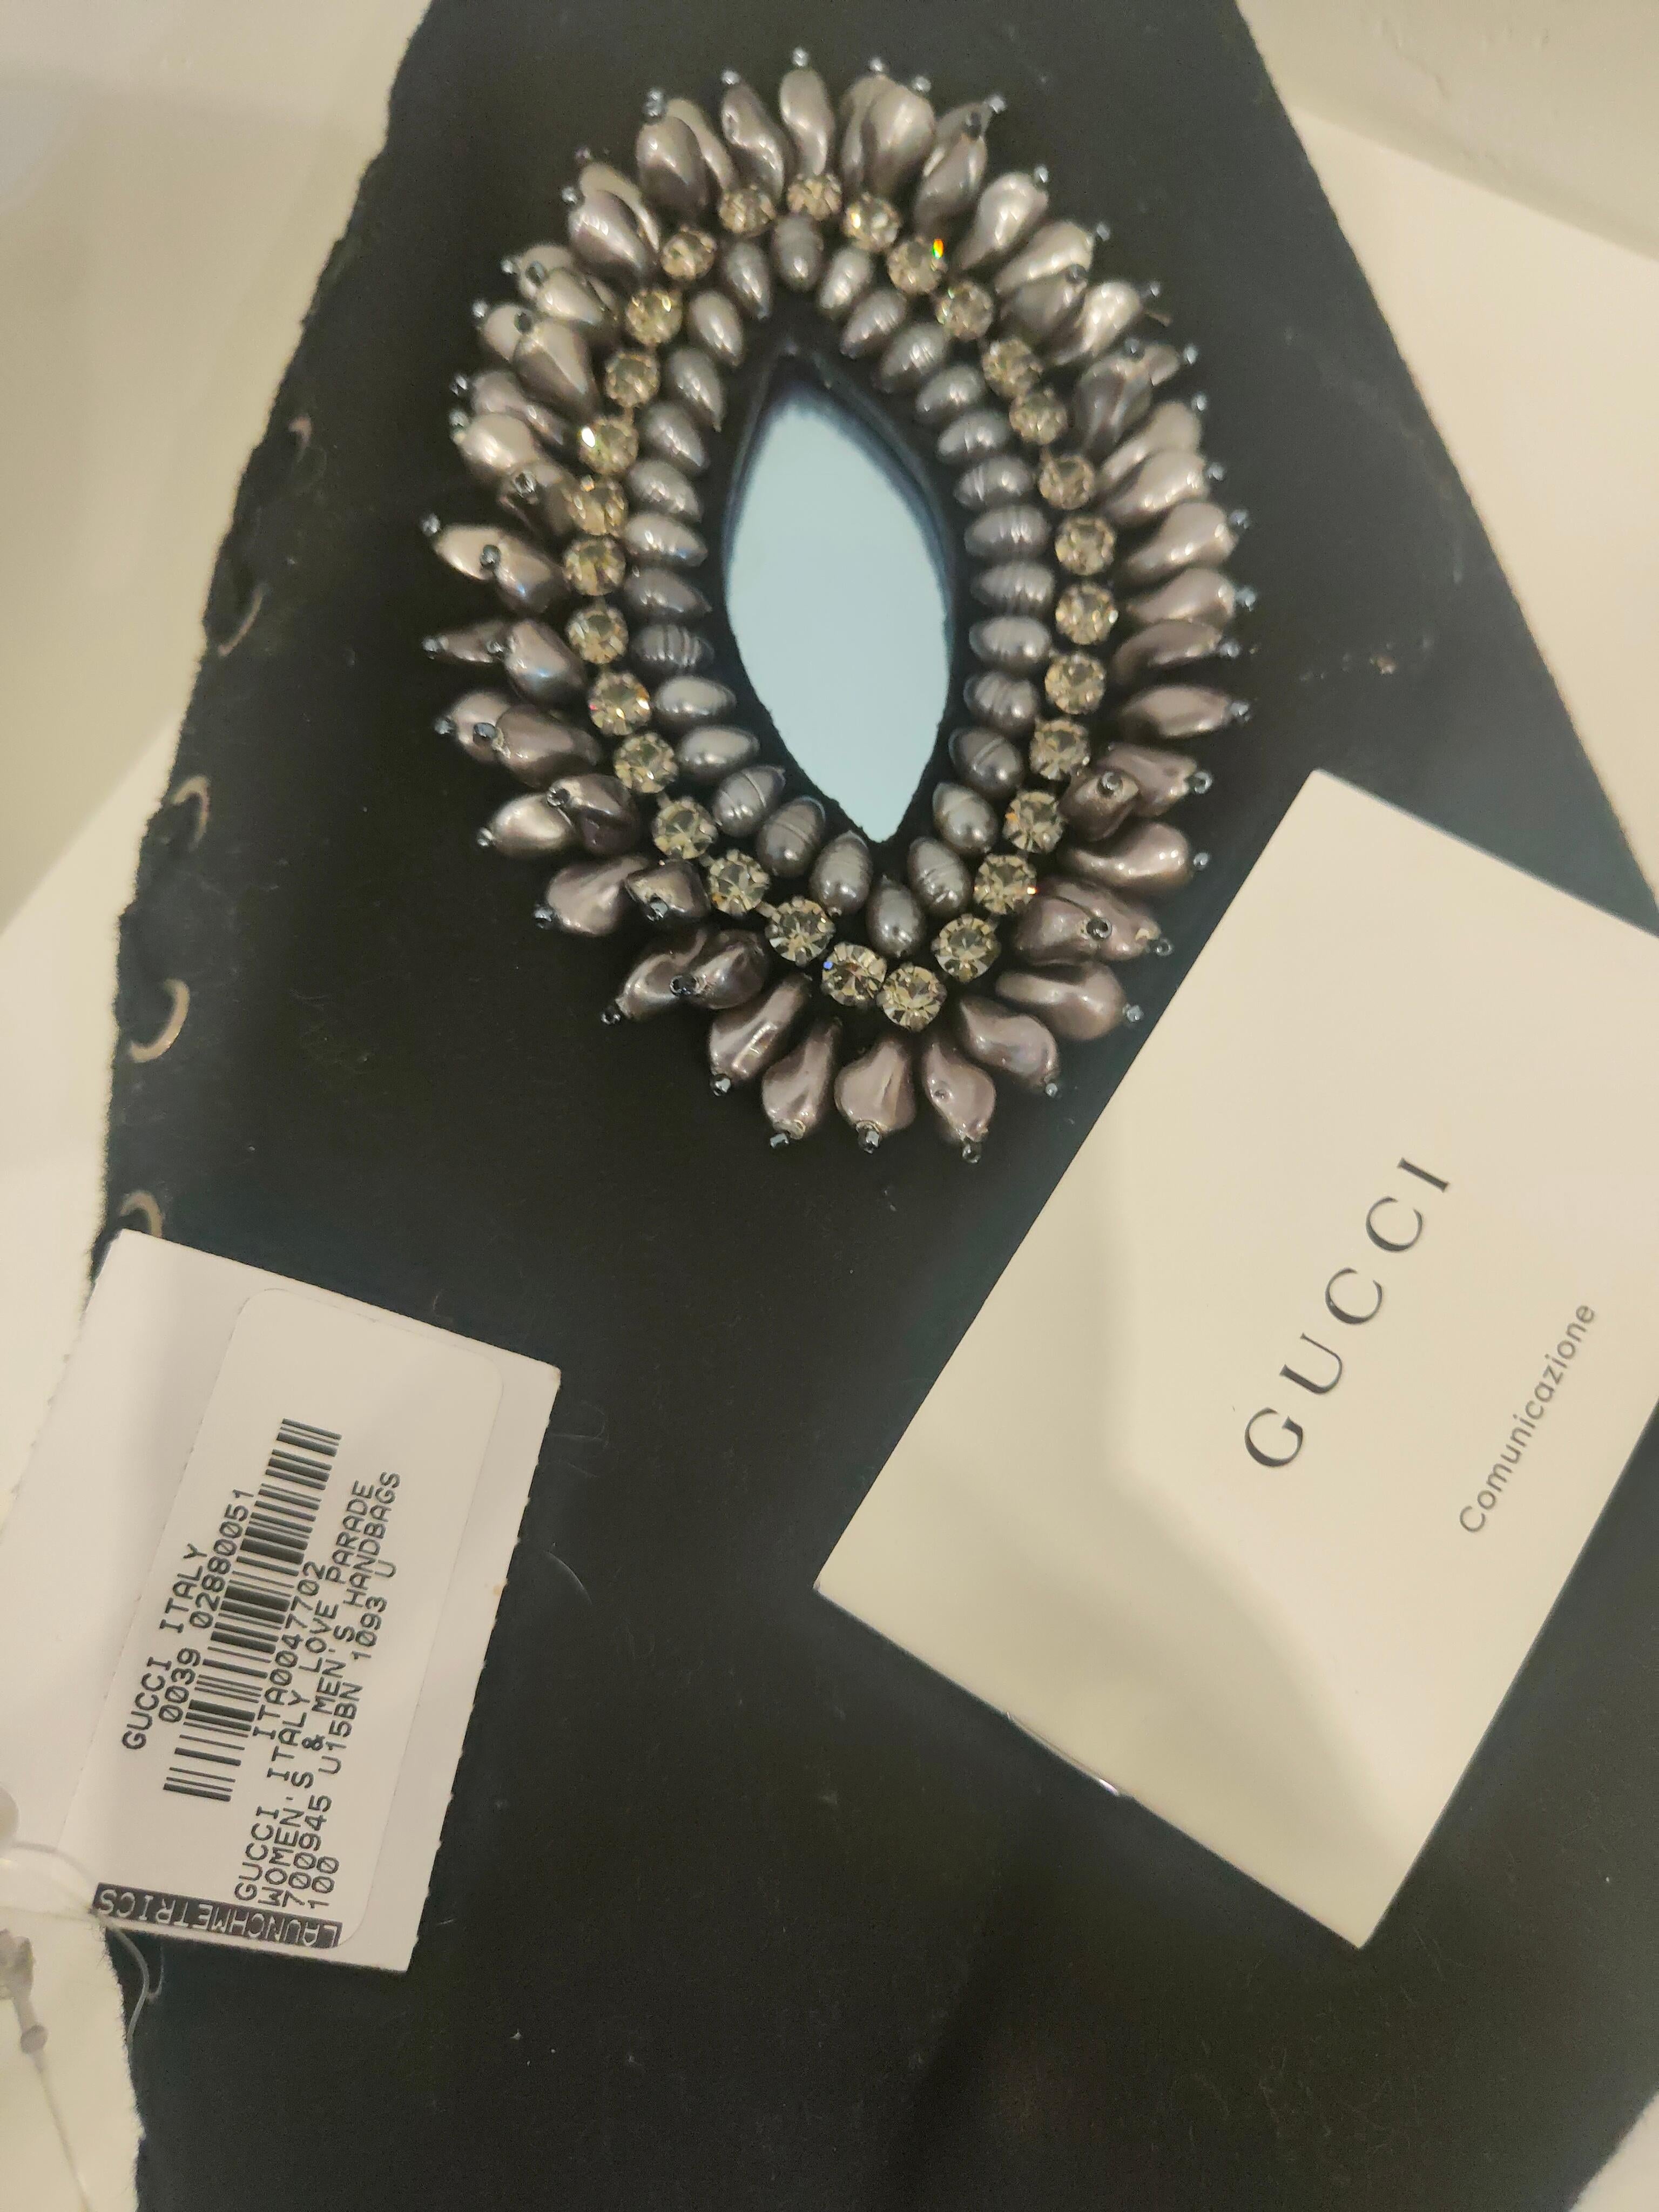 Gucci Love Parade Collection schwarze Tasche mit Swarovski-Steinen und Perlen
Vollständig in Italien hergestellt
Abmessungen: 27*16 cm 

